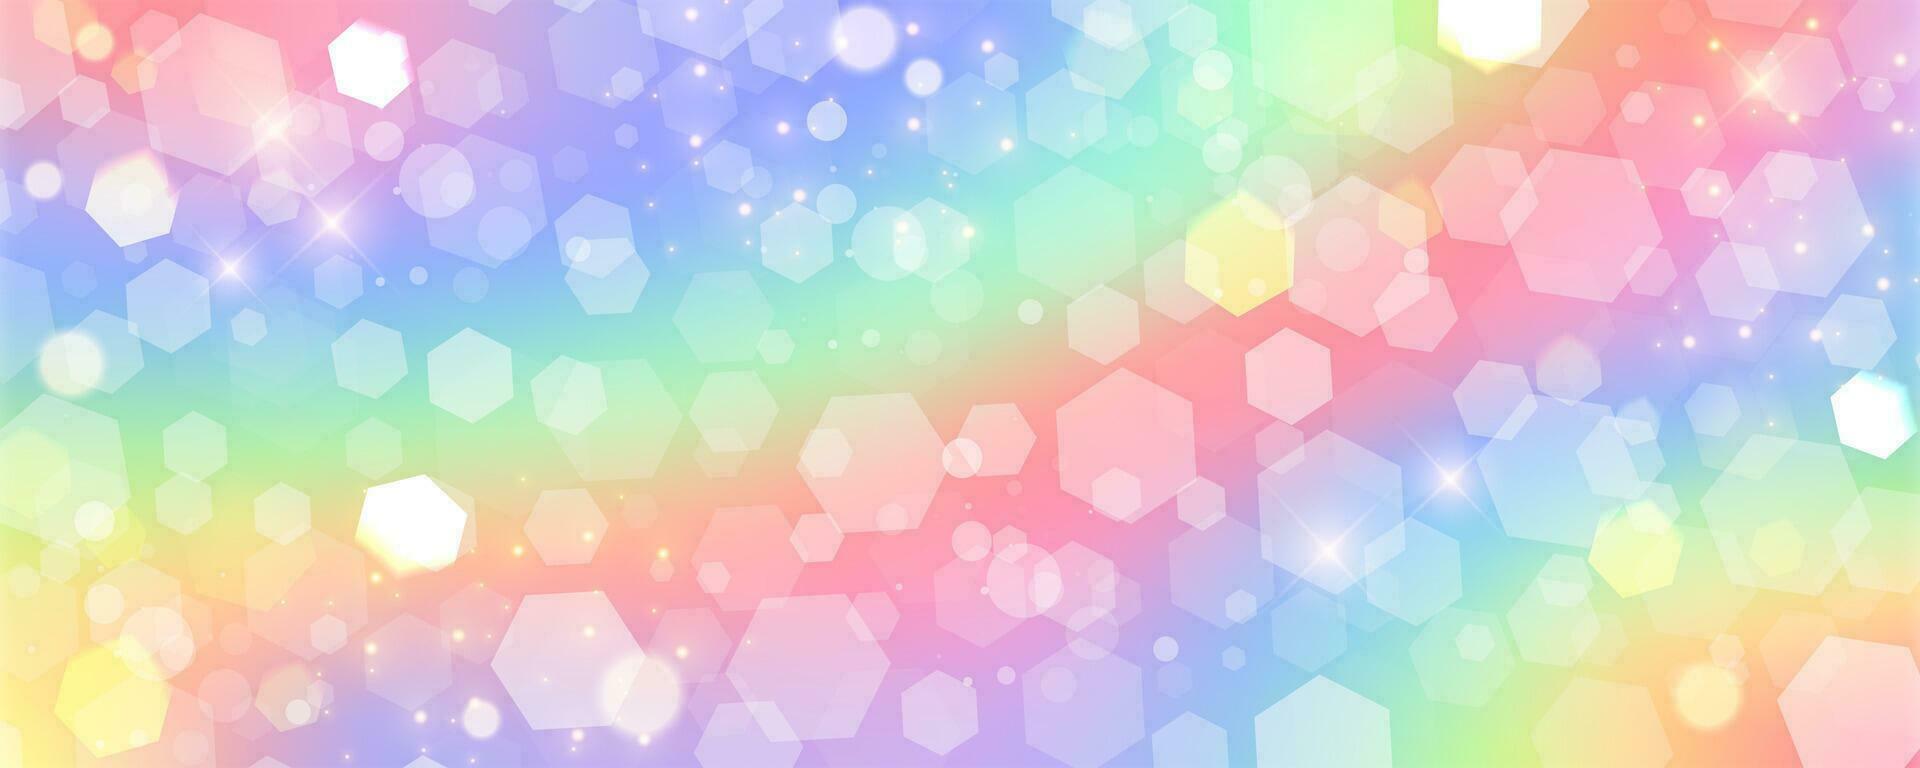 enhörning regnbåge bakgrund med glitter stjärnor och hexagoner. söt nagic pastell mönster. magi drömma holografiska himmel. vektor